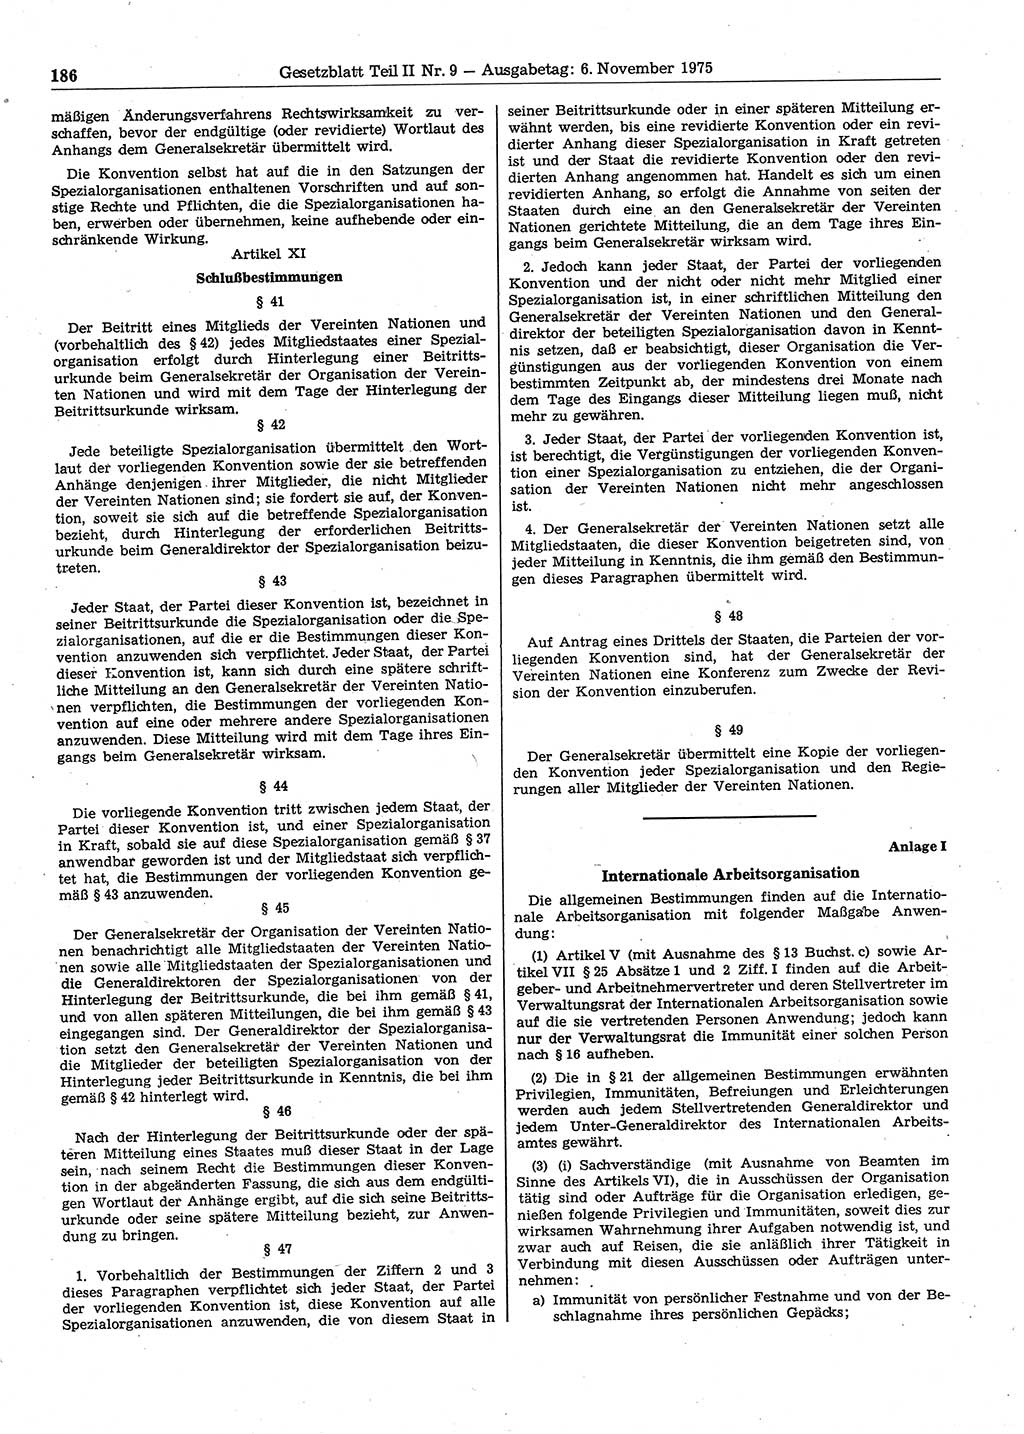 Gesetzblatt (GBl.) der Deutschen Demokratischen Republik (DDR) Teil ⅠⅠ 1975, Seite 186 (GBl. DDR ⅠⅠ 1975, S. 186)